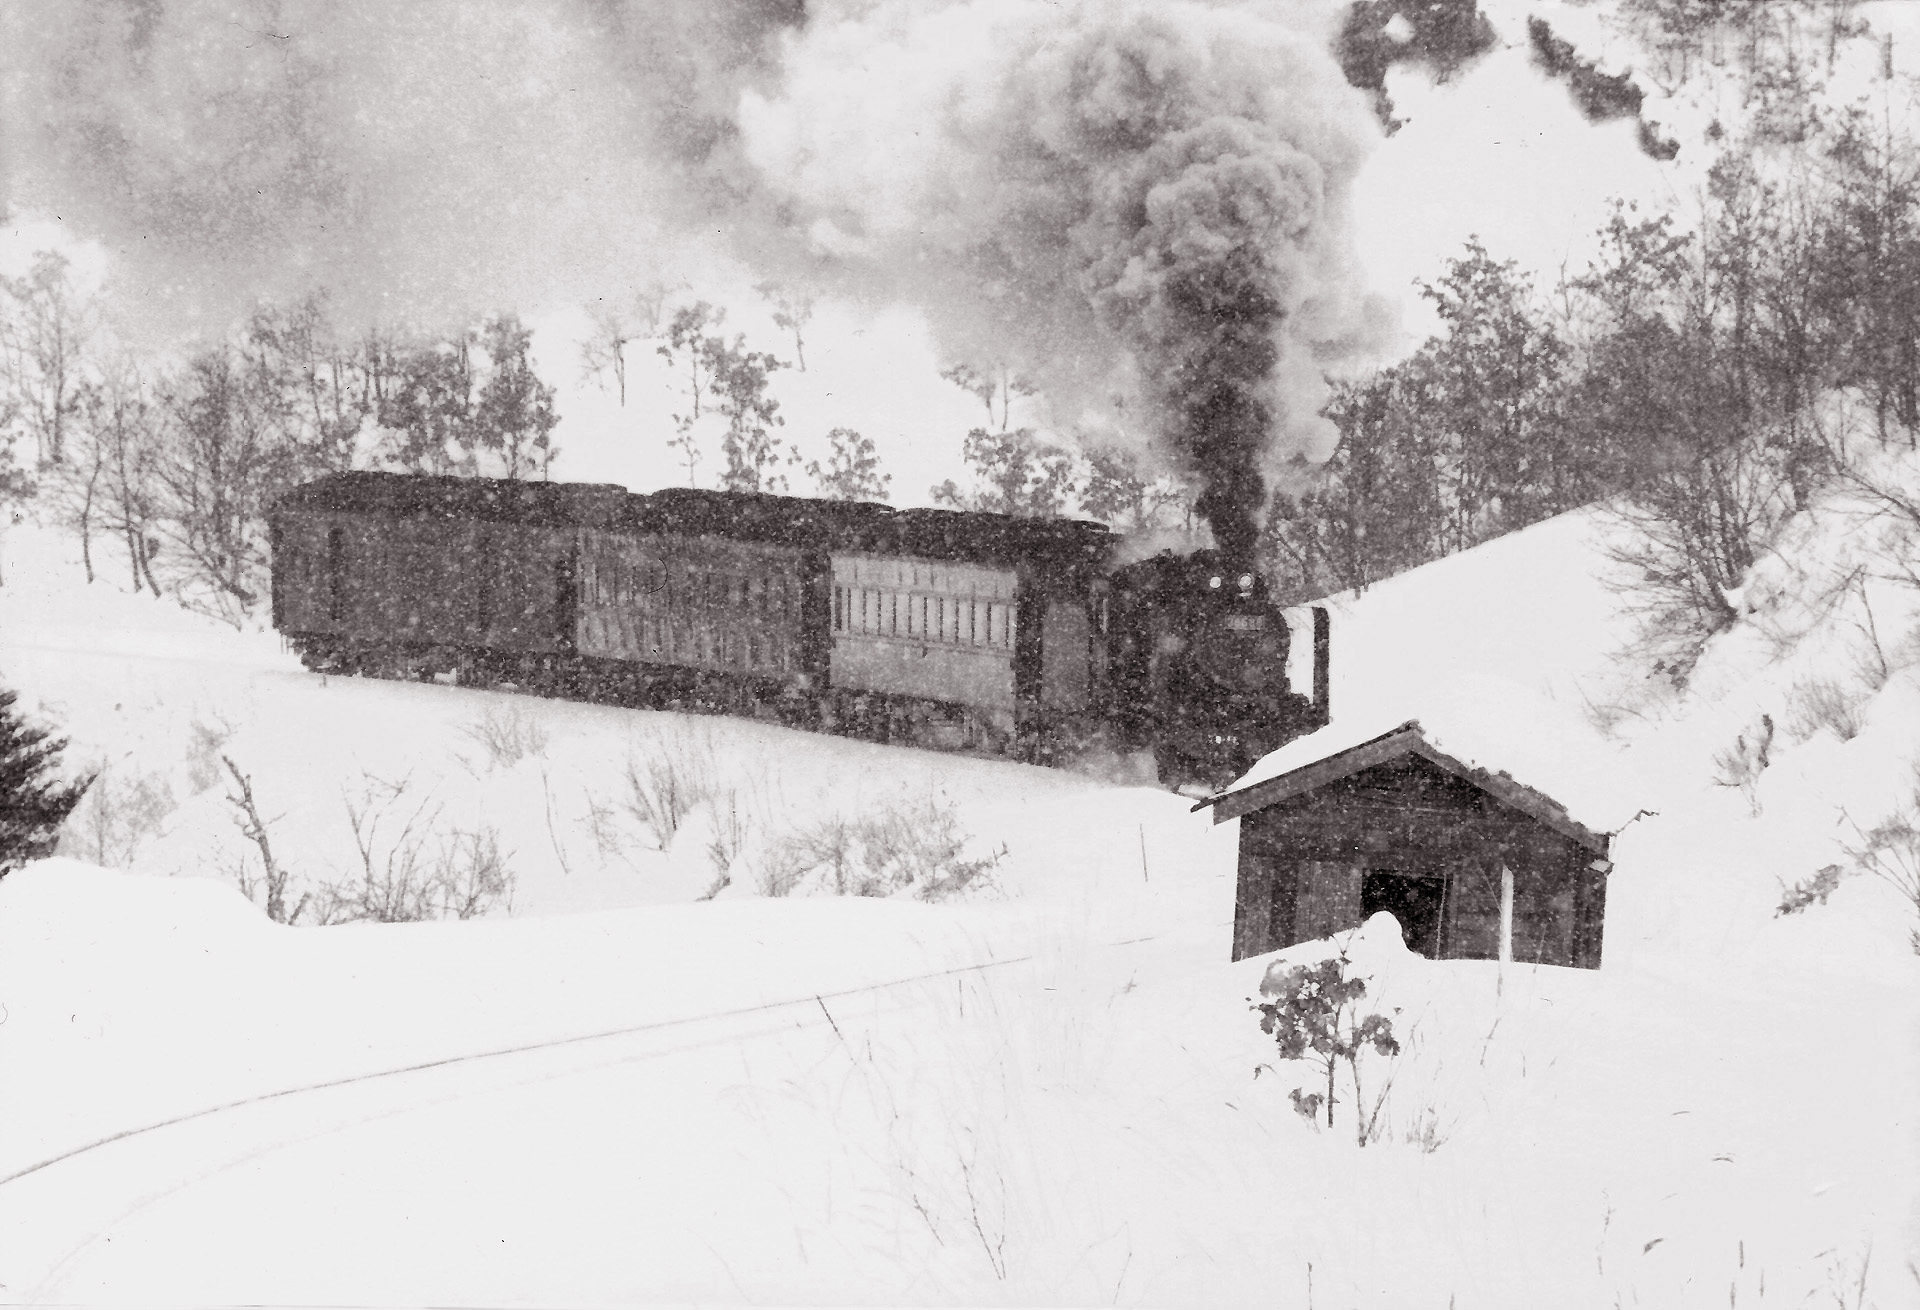 鉄道 蒸気機関車 雪の中を走る セピア色の風景 壁紙19x1310 壁紙館